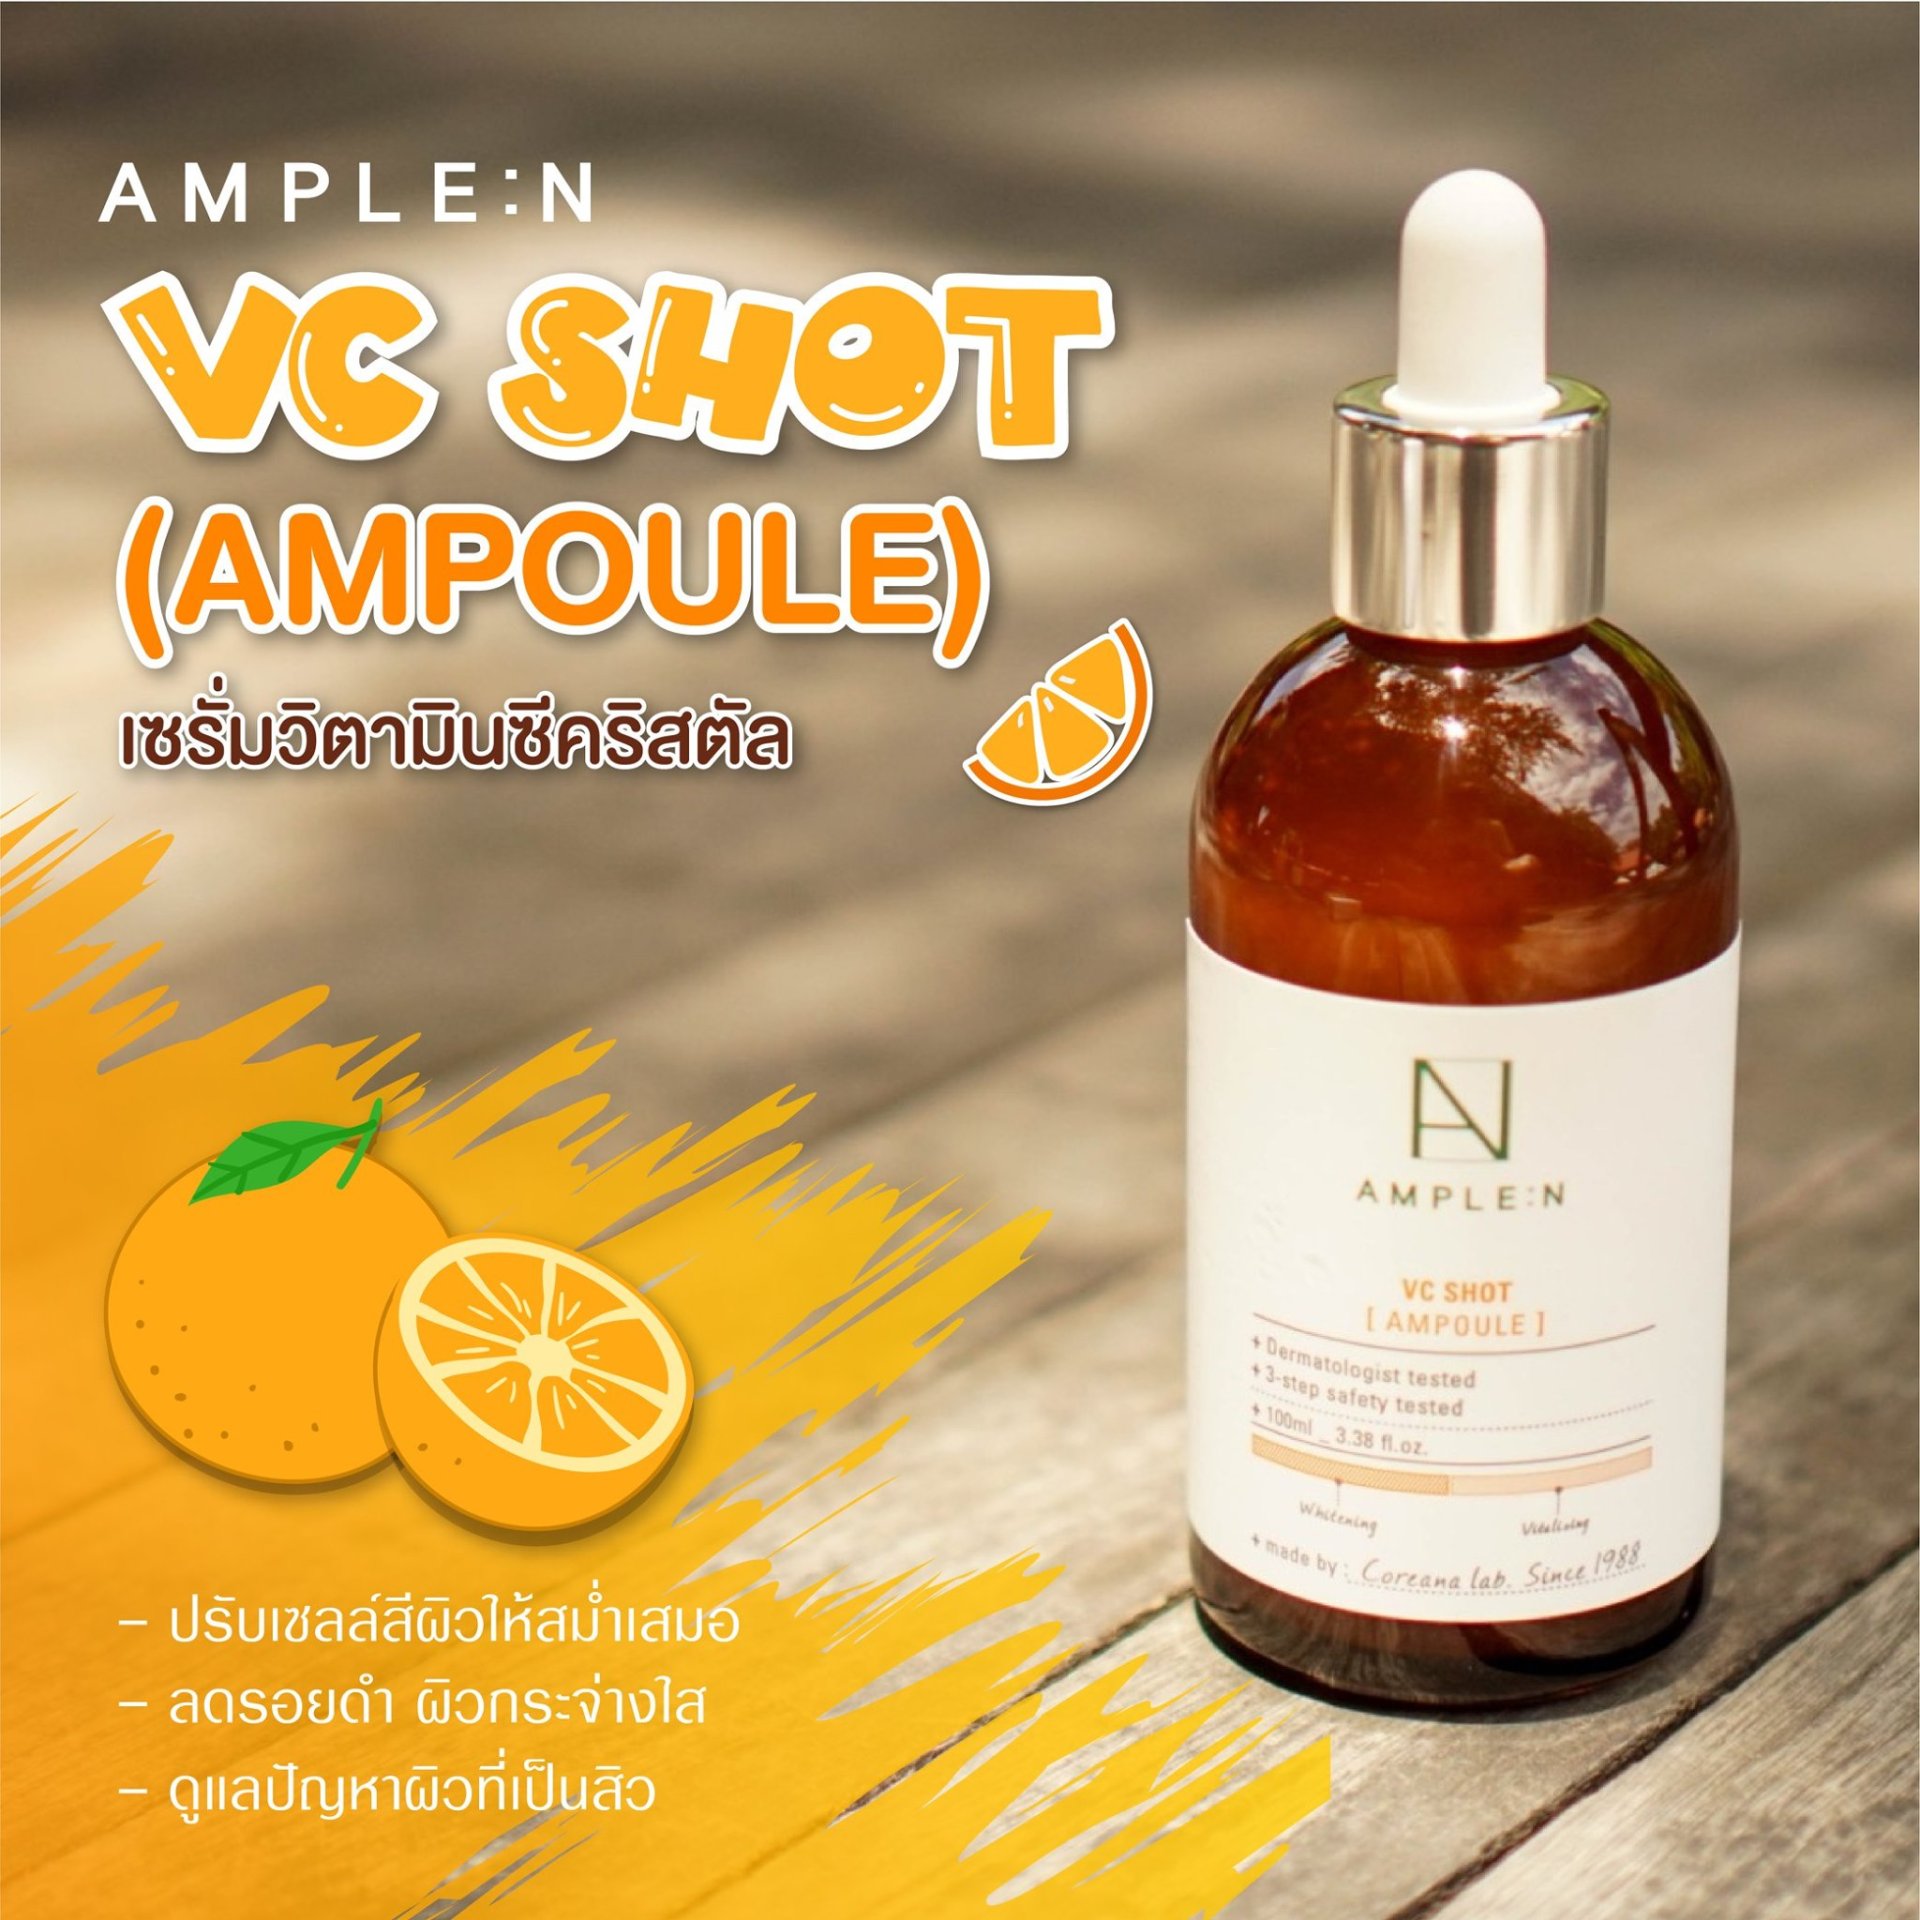 AMPLE:N - VC Shot Ampoule - 100ml